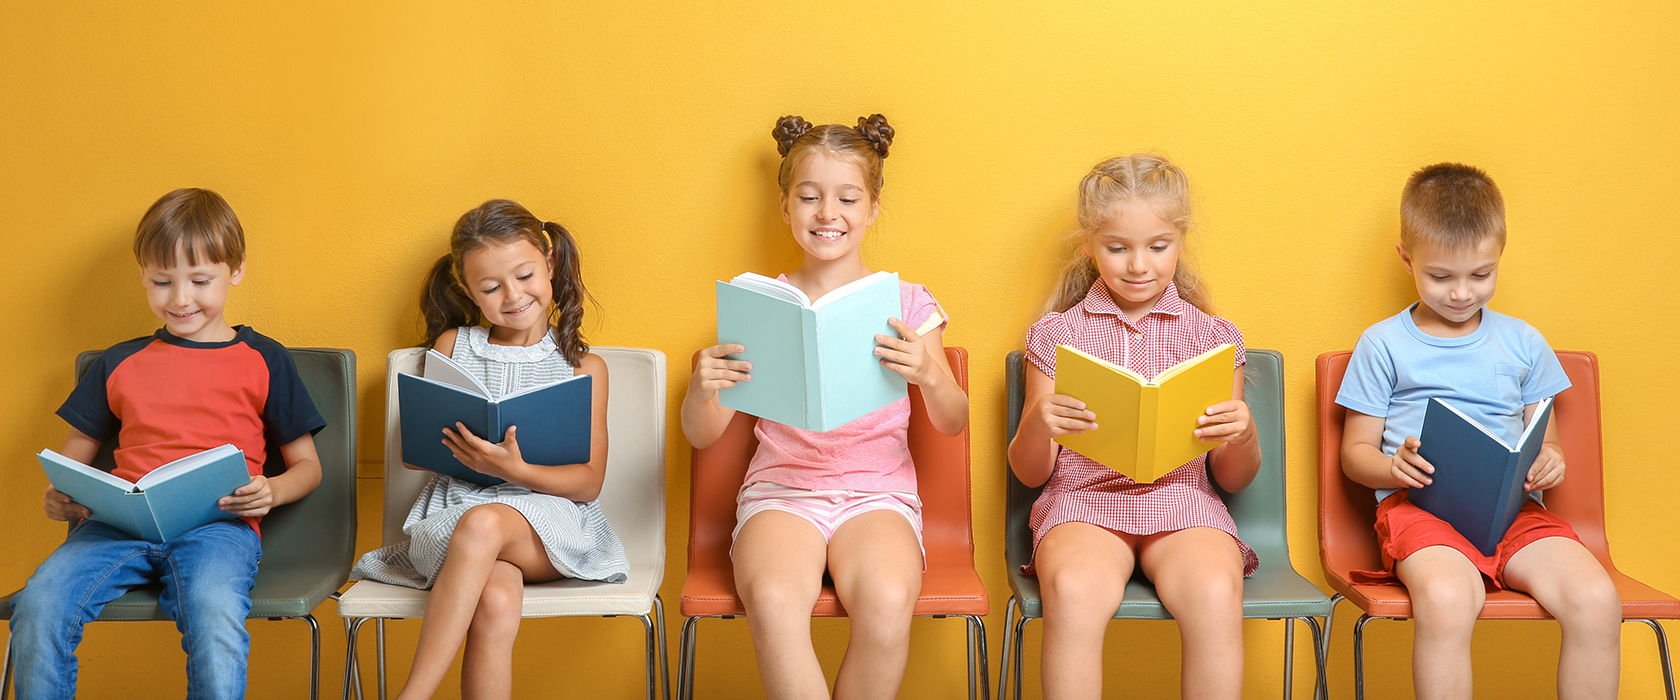 Как чтение литературы влияет на развитие ребенка thumbnail